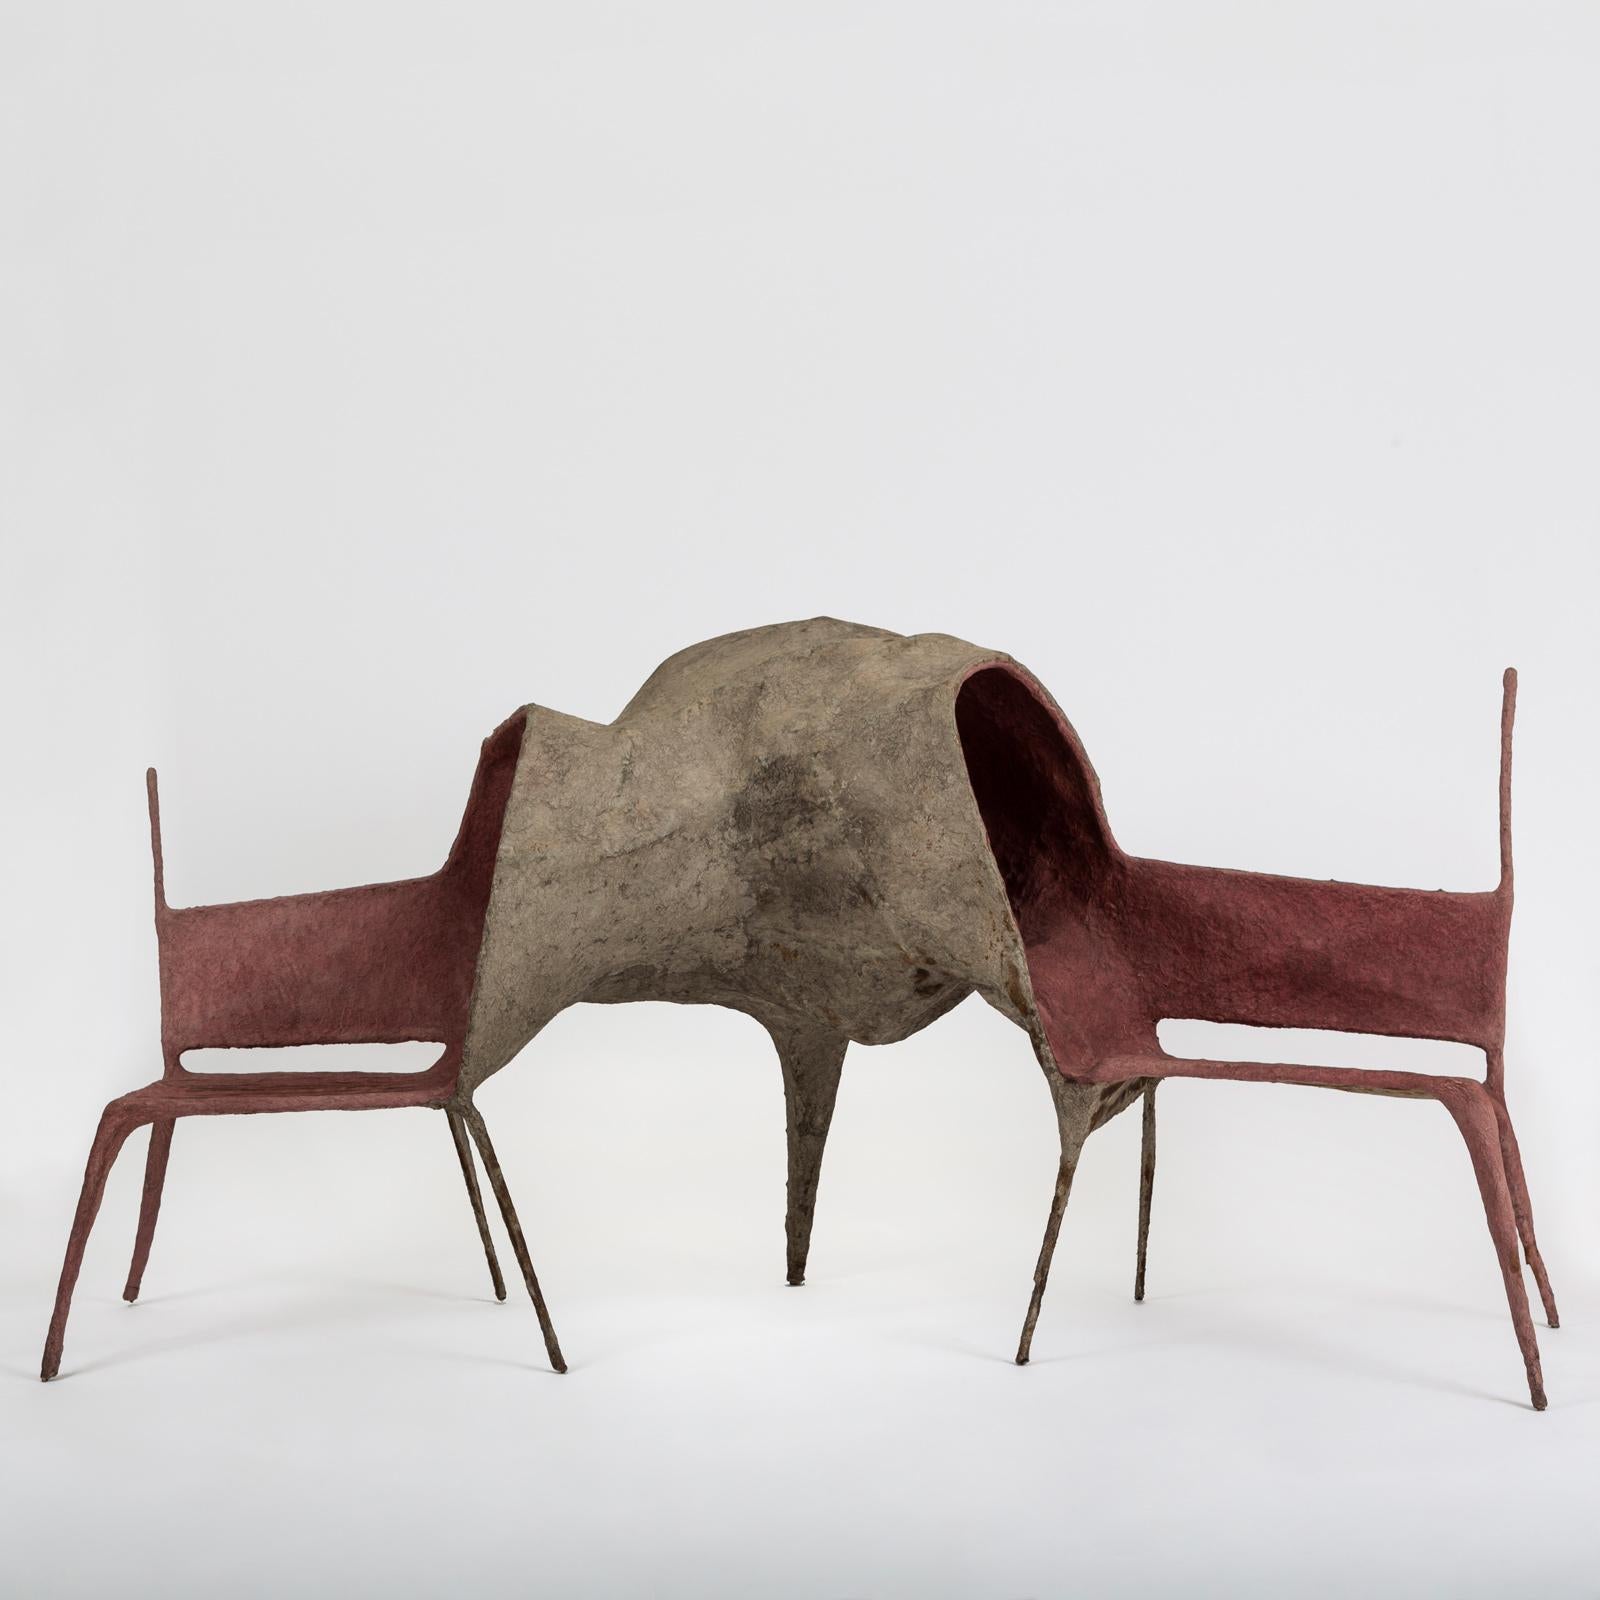 Der Lovers' Chair ist Teil der 'Evolution Collection'. In einer Zeit, in der wir in einem frenetischen Rhythmus von Informationen überflutet werden, wollte Nacho Carbonell einen Zufluchtsort schaffen, an dem man diesem Rausch, in den wir eingetaucht